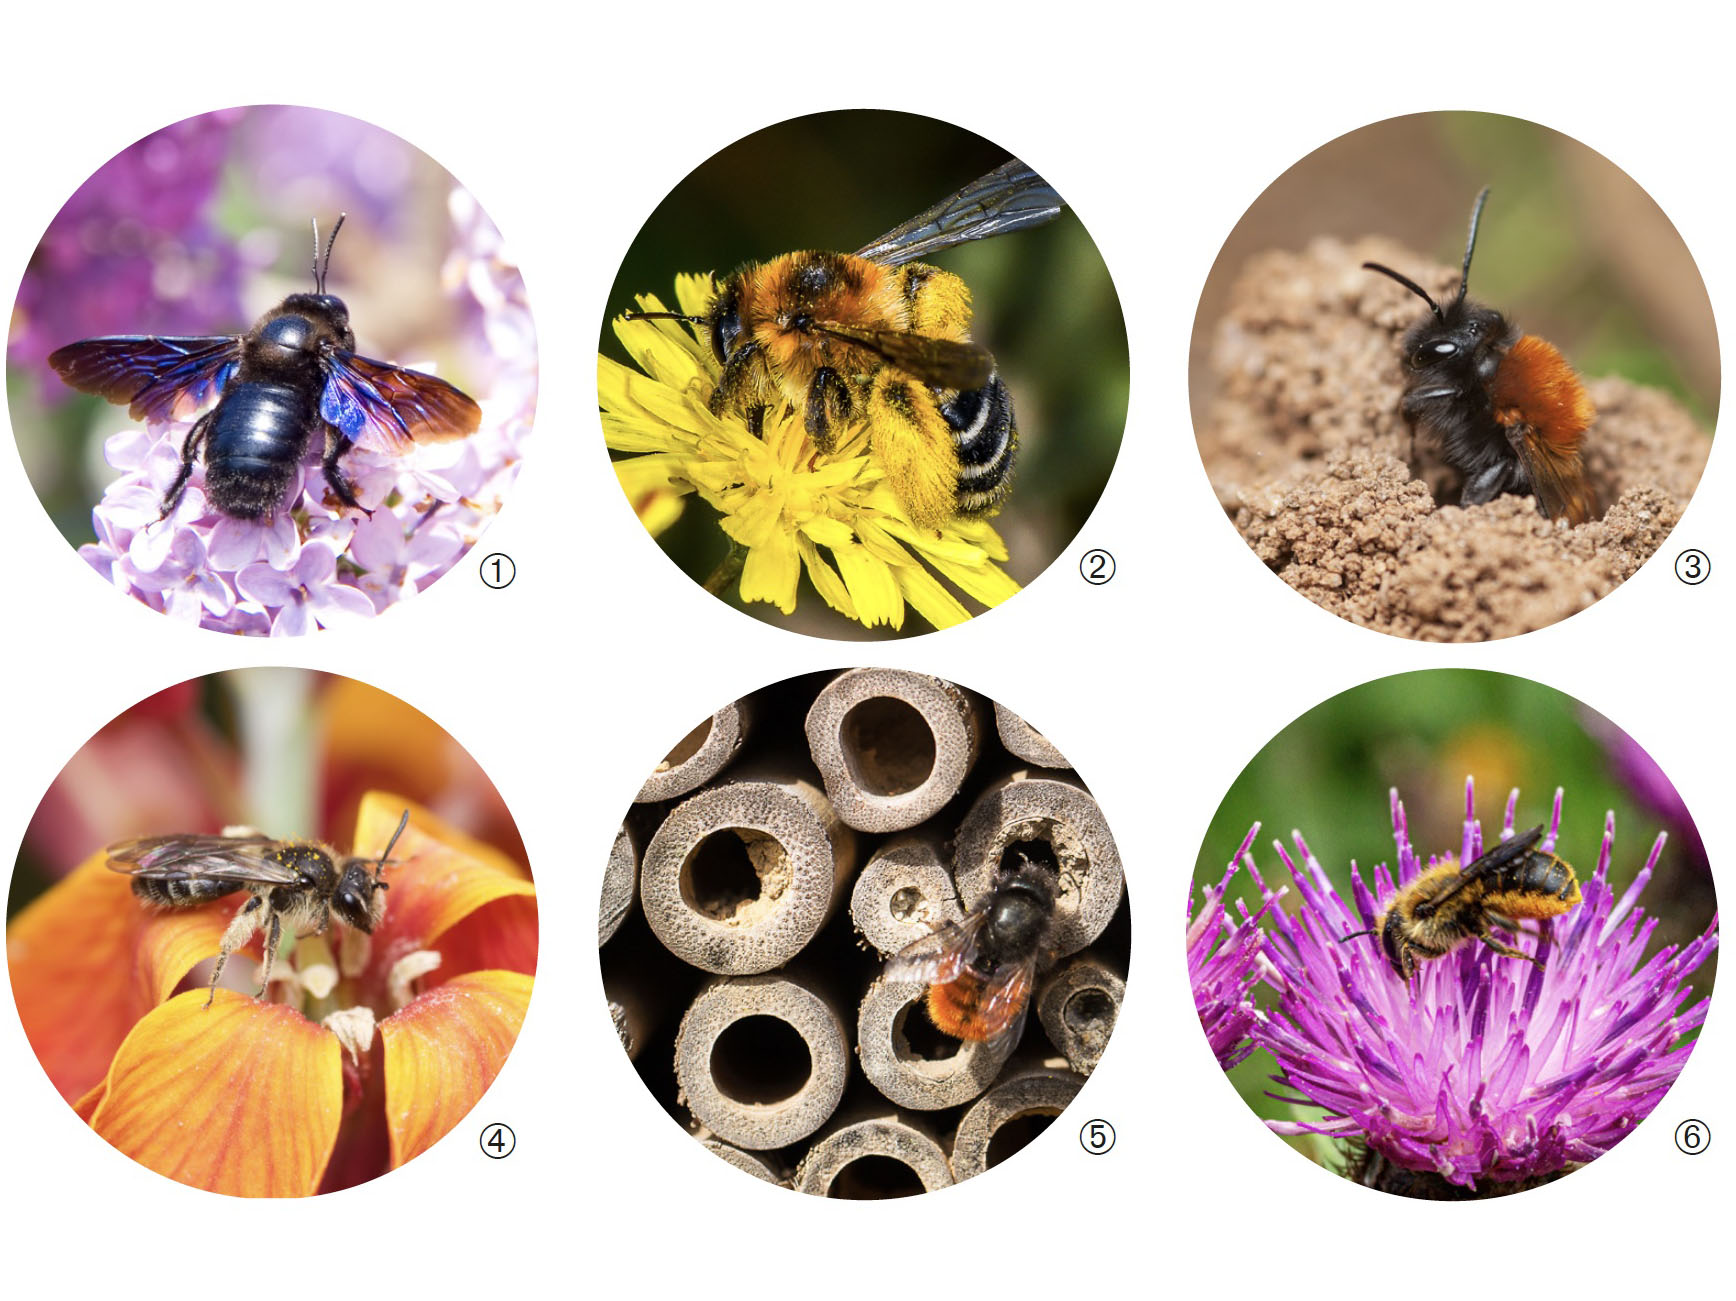 Fauna til: Ms de 1.100 especies de abejas